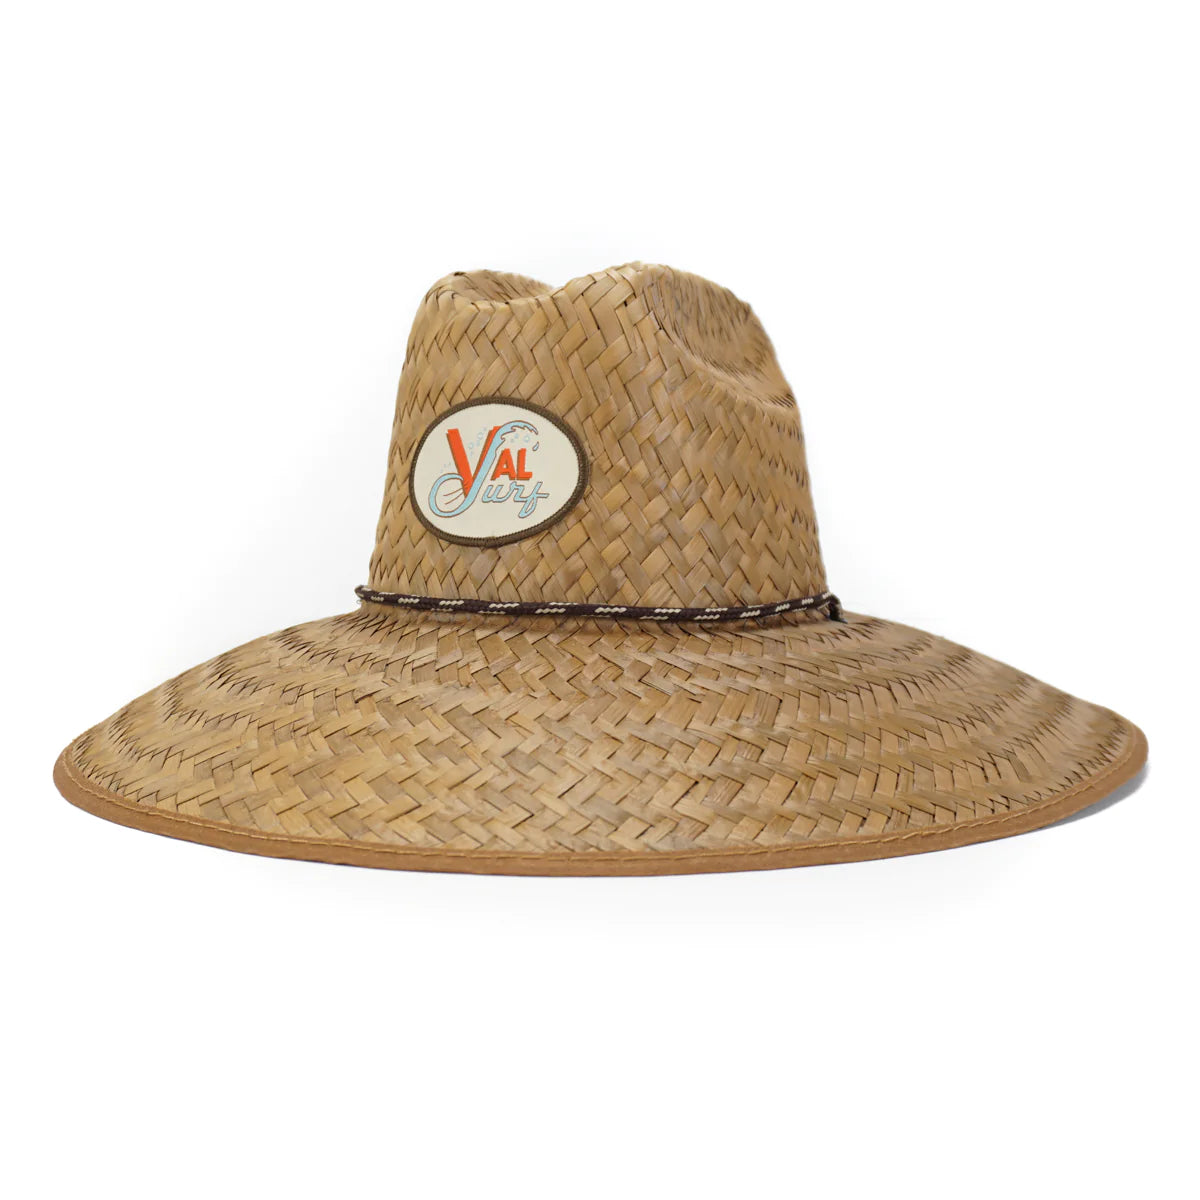 Val Surf Grom LG Hat - Natural